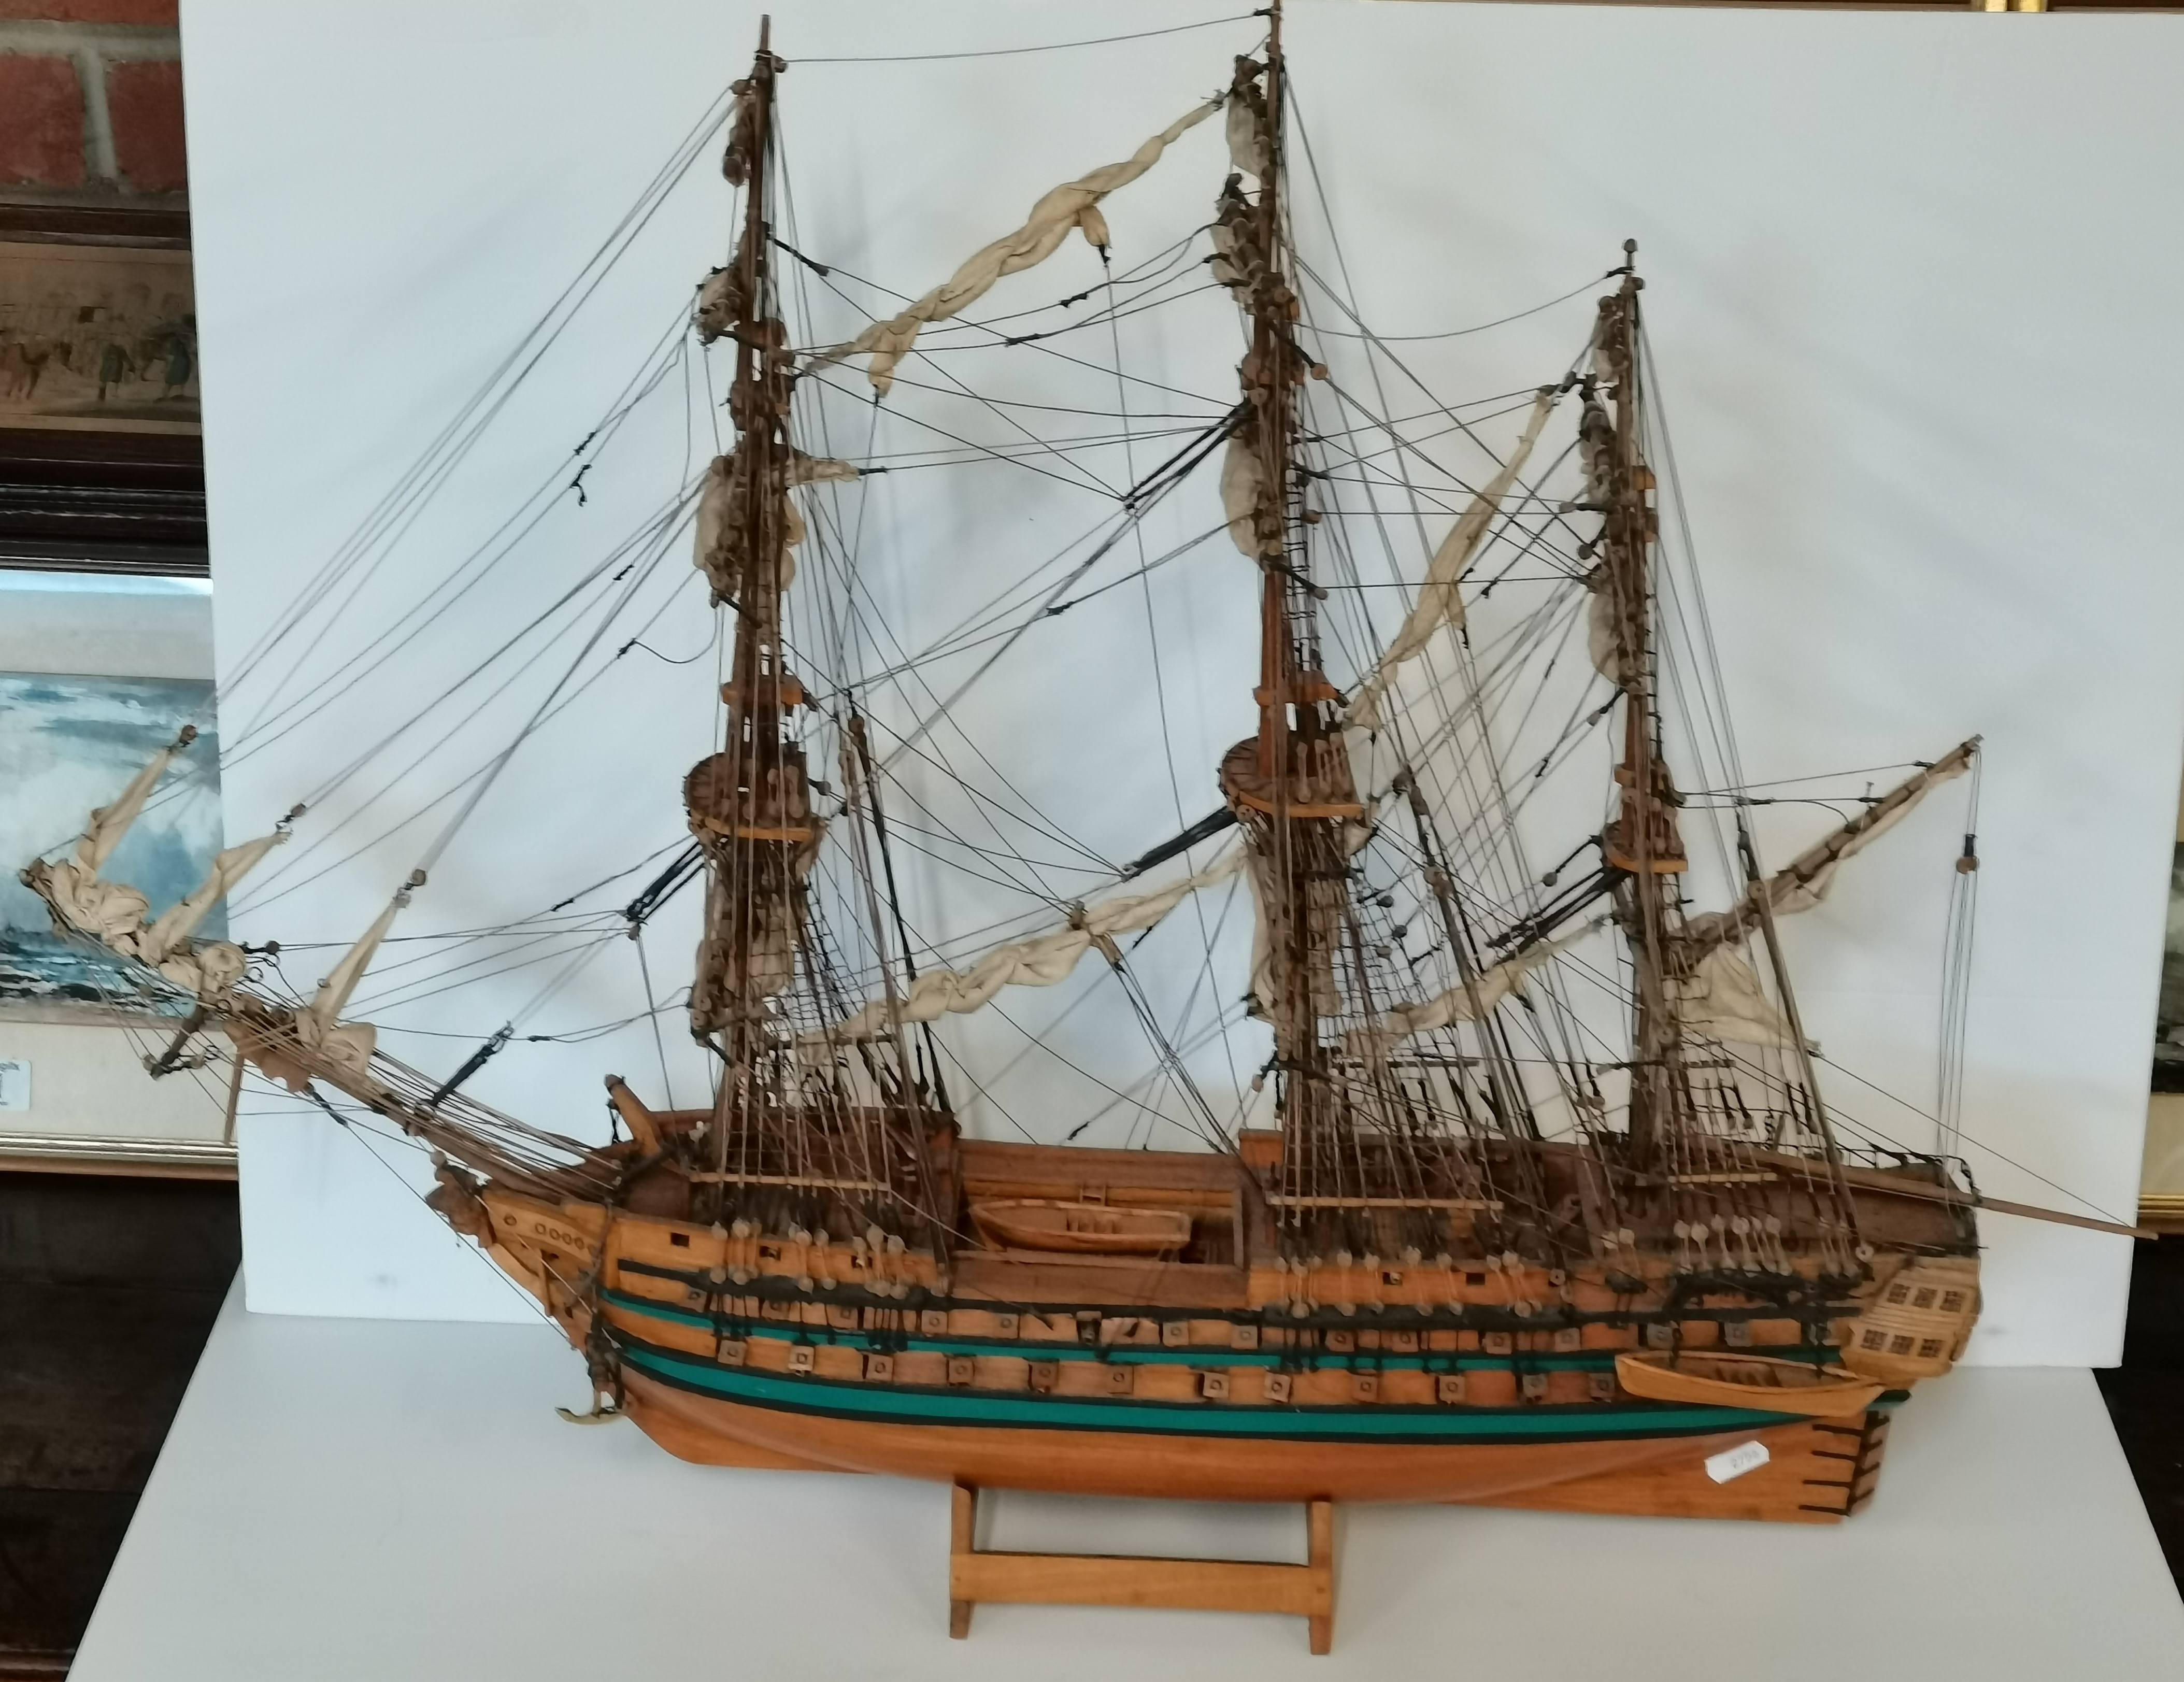 A wooden model battleship